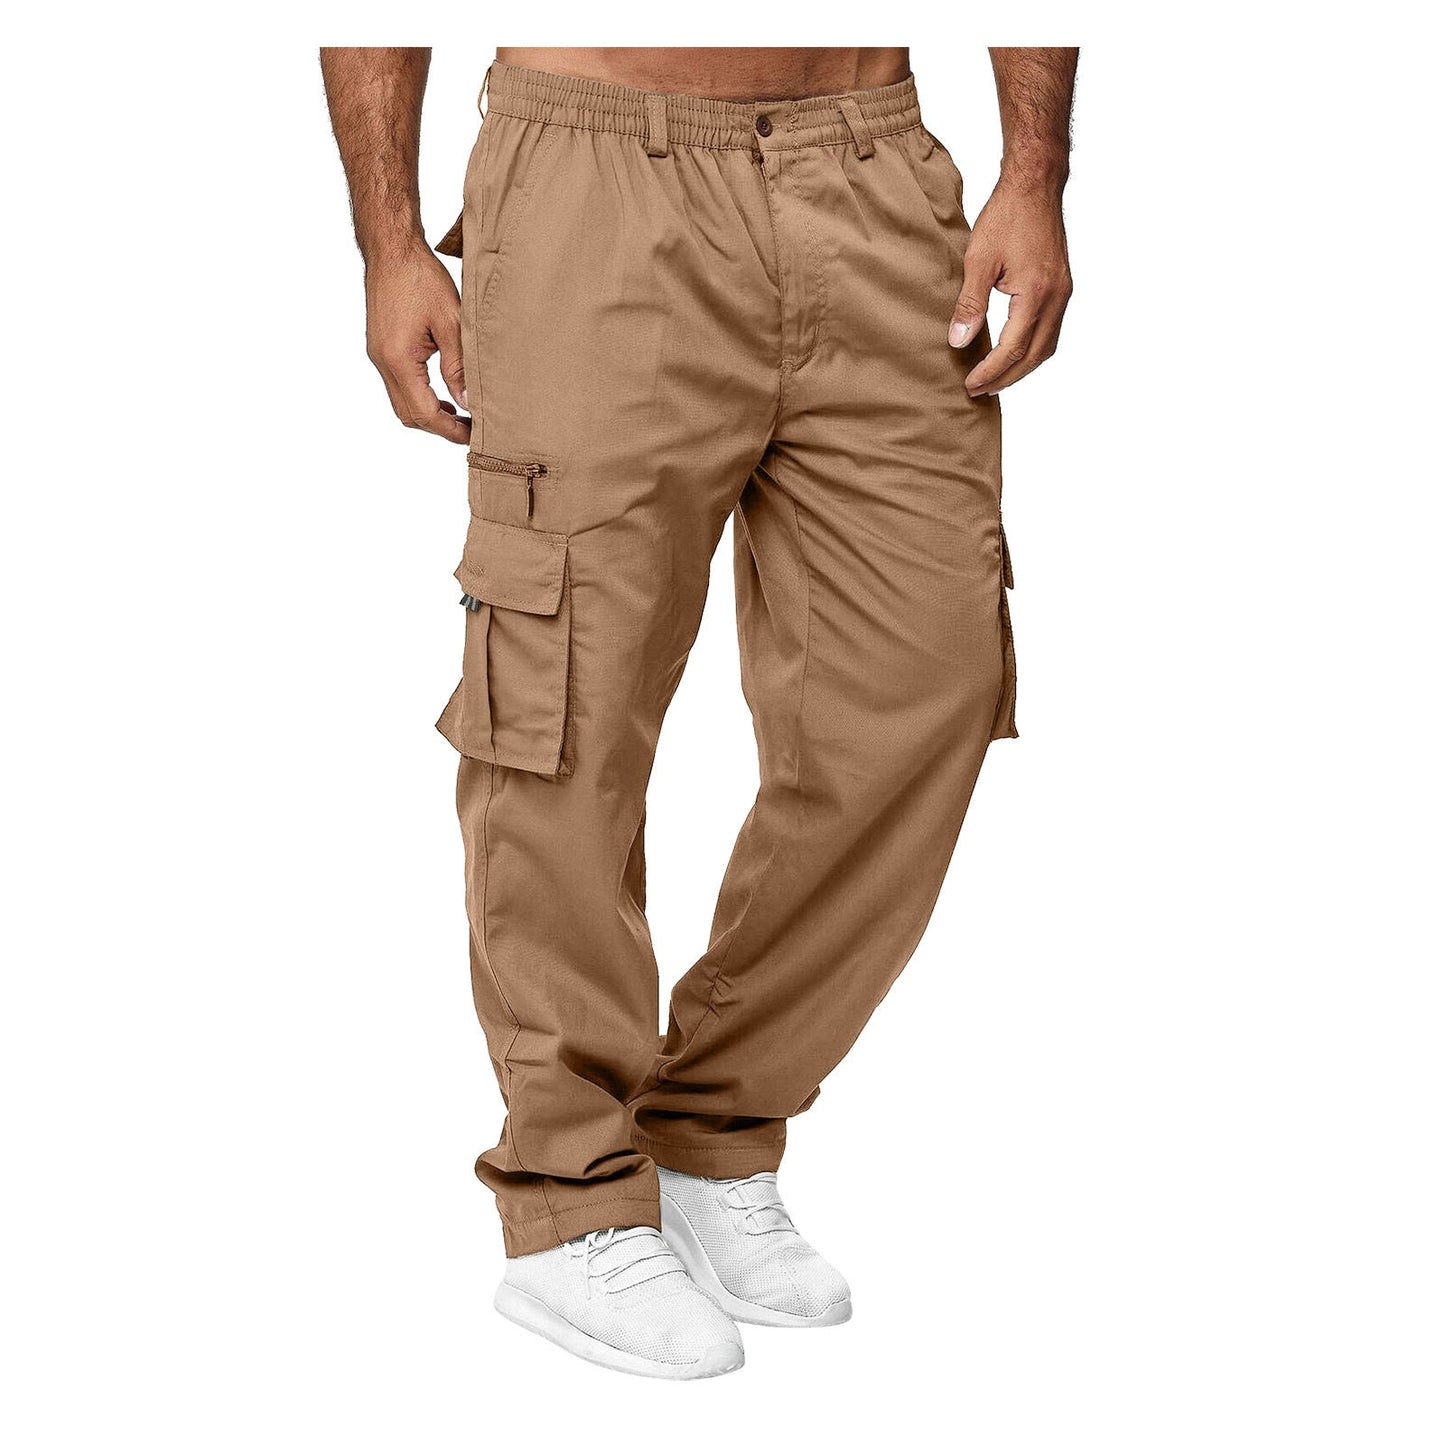 Casual Pockets Men's Outdoor Pants-Pants-Khaki-S-Free Shipping at meselling99